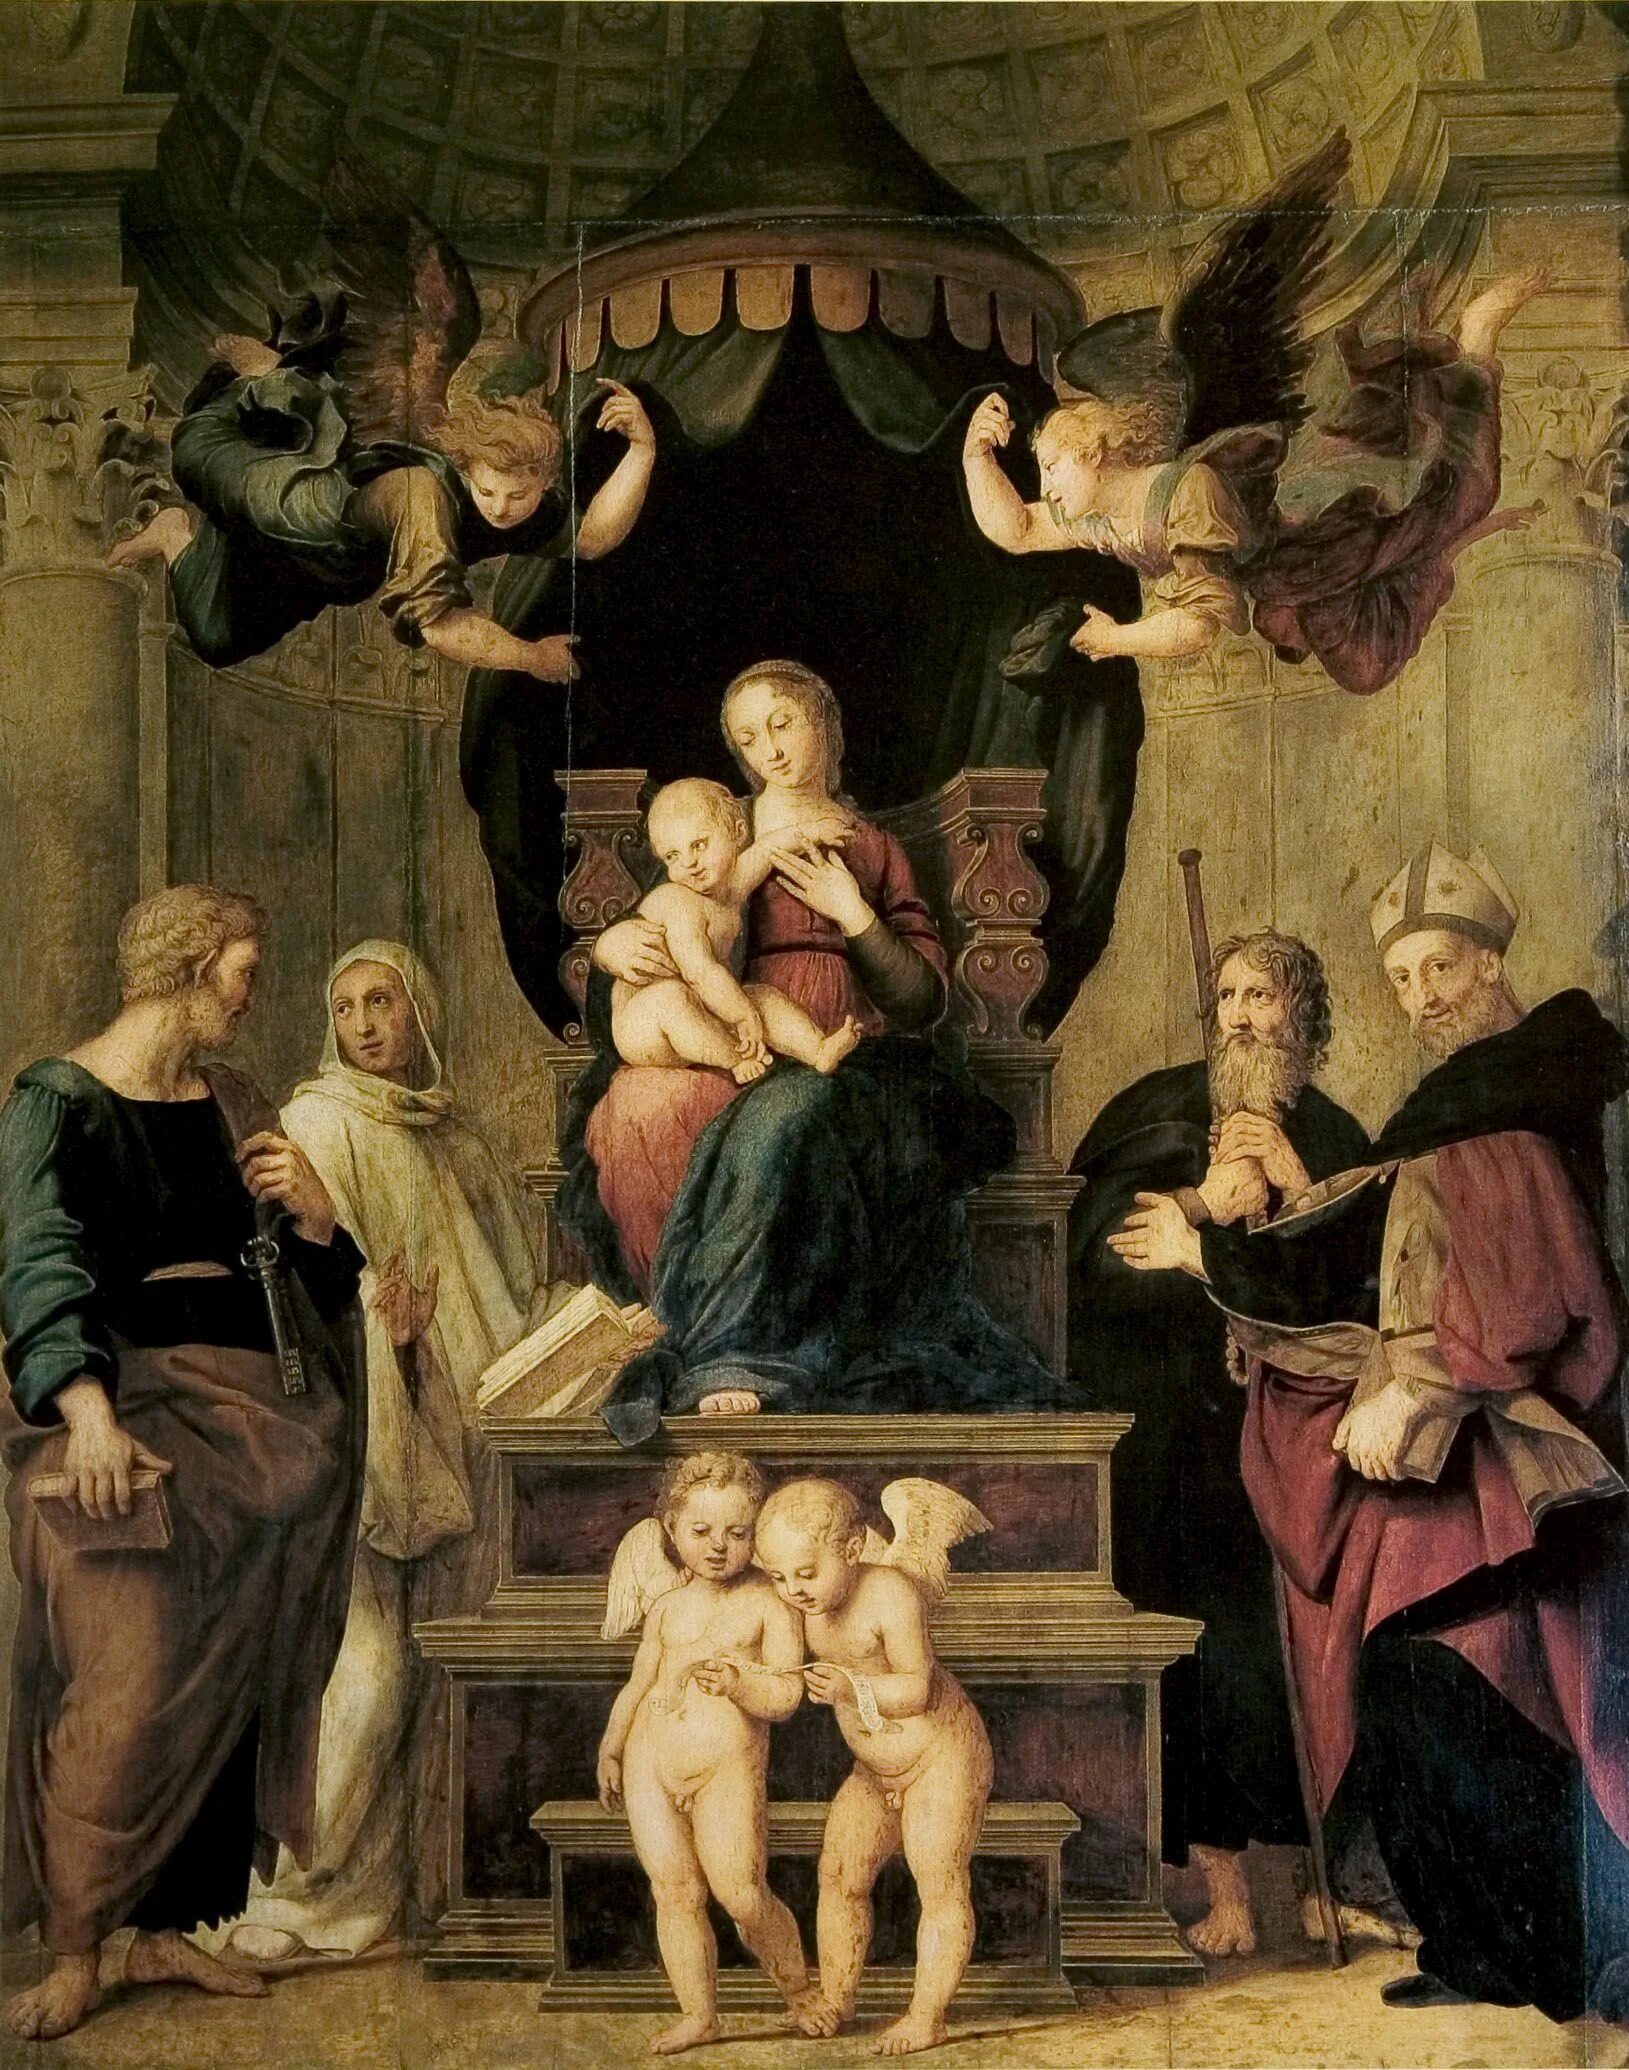 "Мадонна под балдахином" (1506-1508). Художественные эпохи возрождения